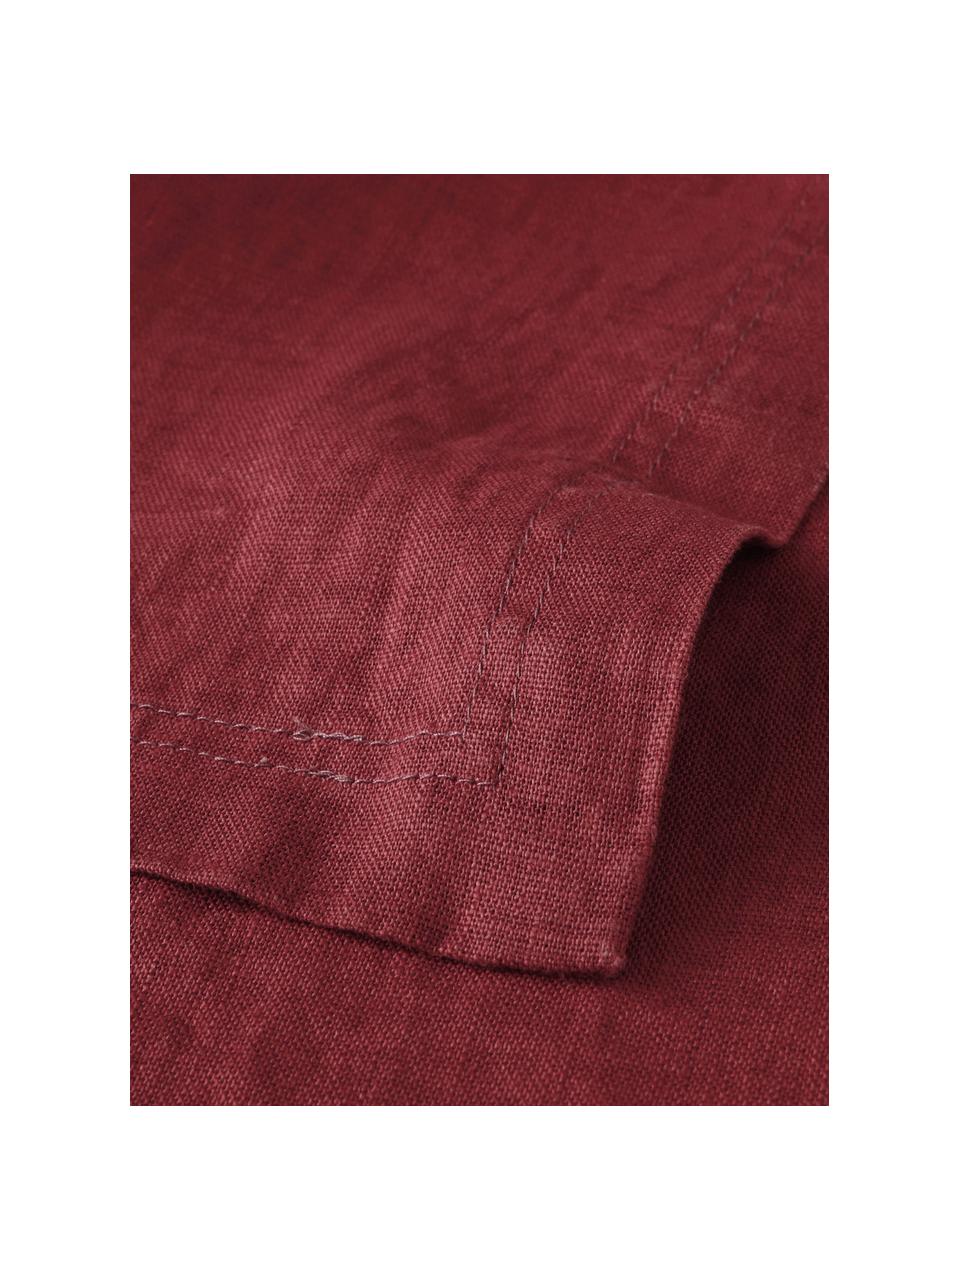 Tovaglia in lino rosso Pembroke, 100% lino, Rosso, Per 4 - 6 persone (Larg. 140 x Lung. 140 cm)